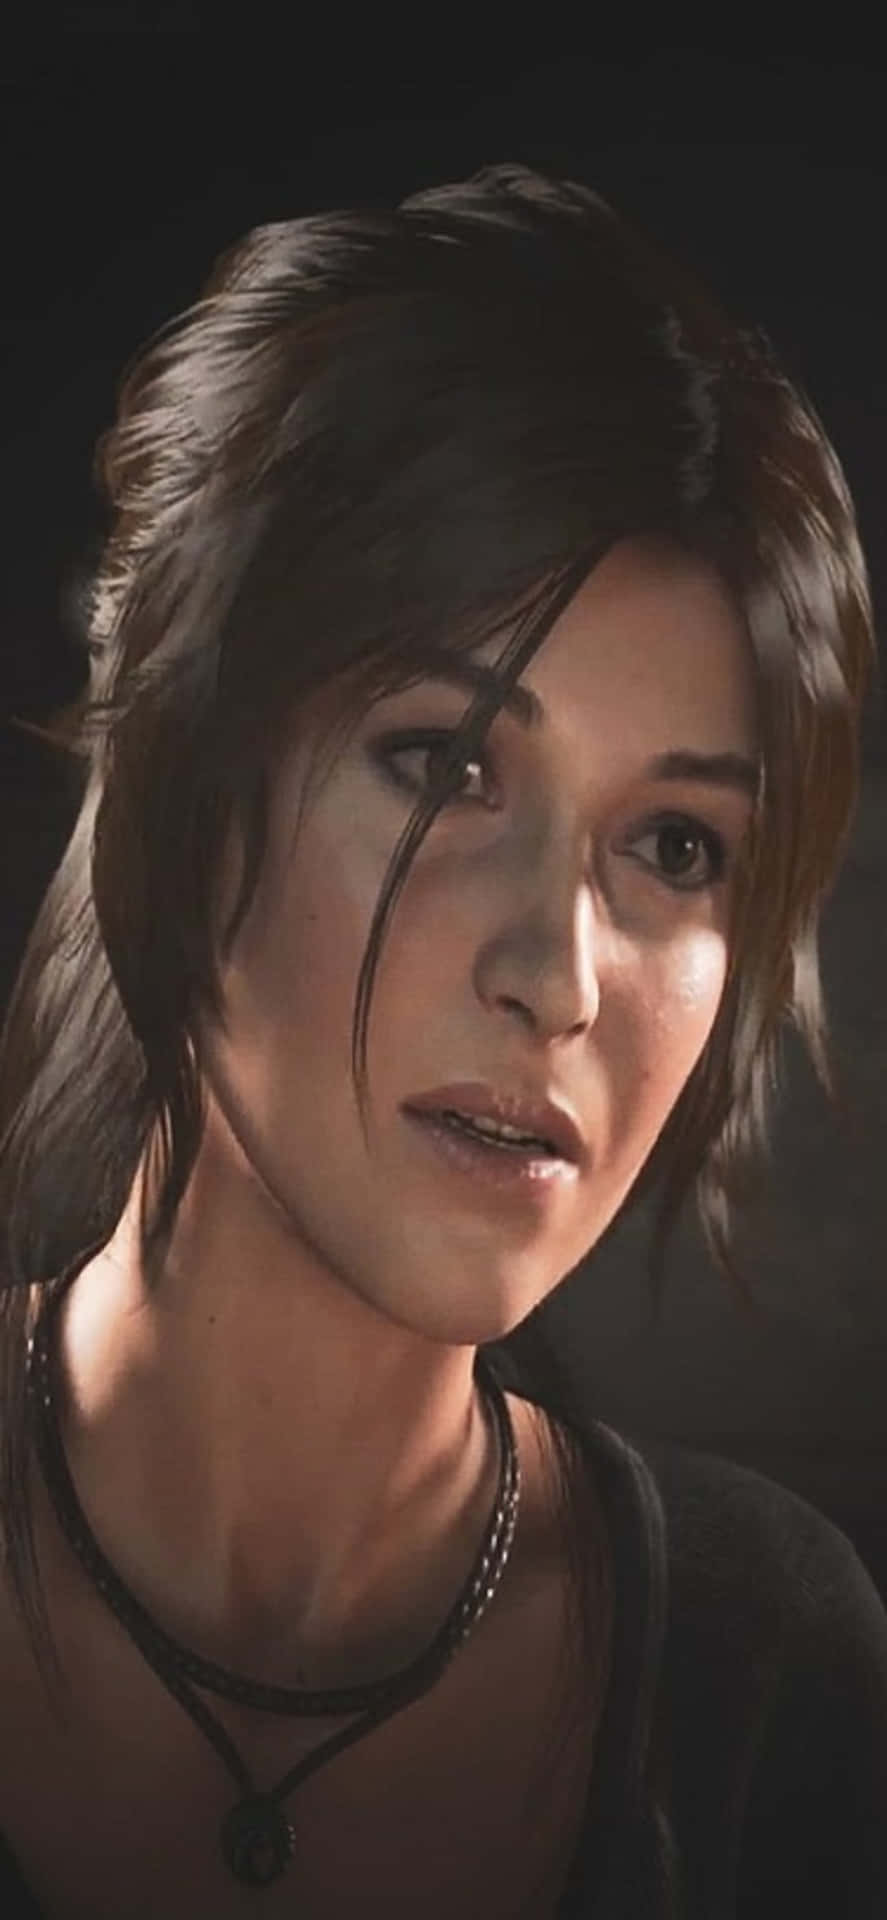 Oövervinnerligaäventyr Väntar På Dig I Shadow Of The Tomb Raider!